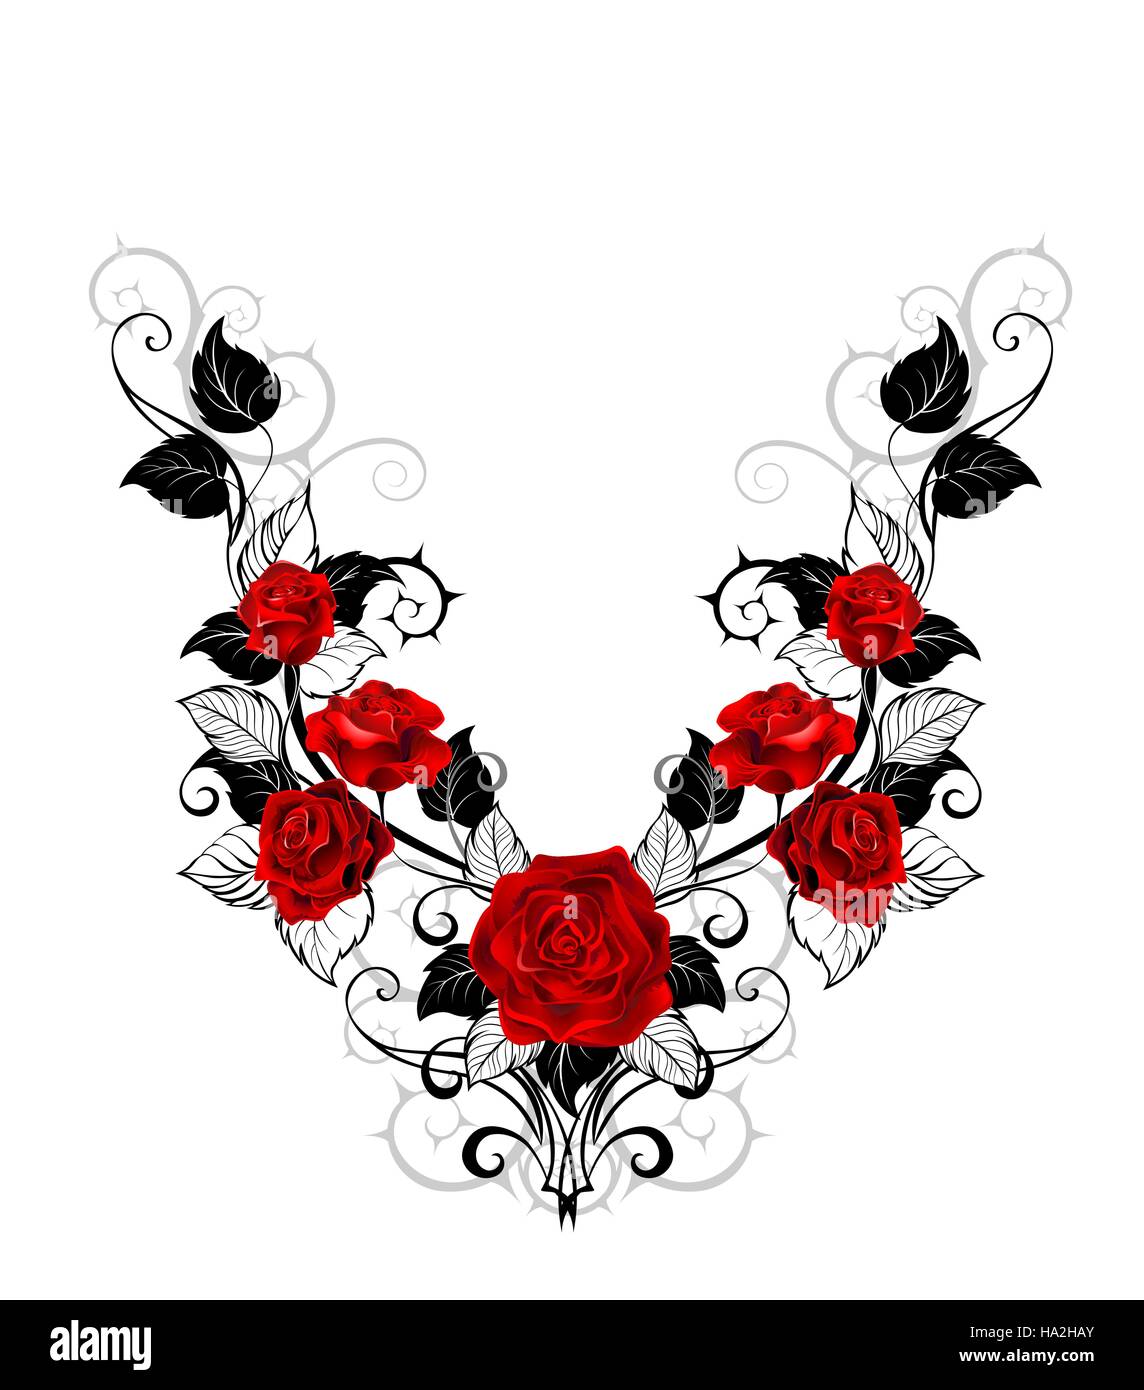 Symmetrische Muster aus roten Rosen und Schwarz lässt und beruht auf einem weißen Hintergrund. Gestaltung von Rosen. Tattoo-Stil. Stock Vektor